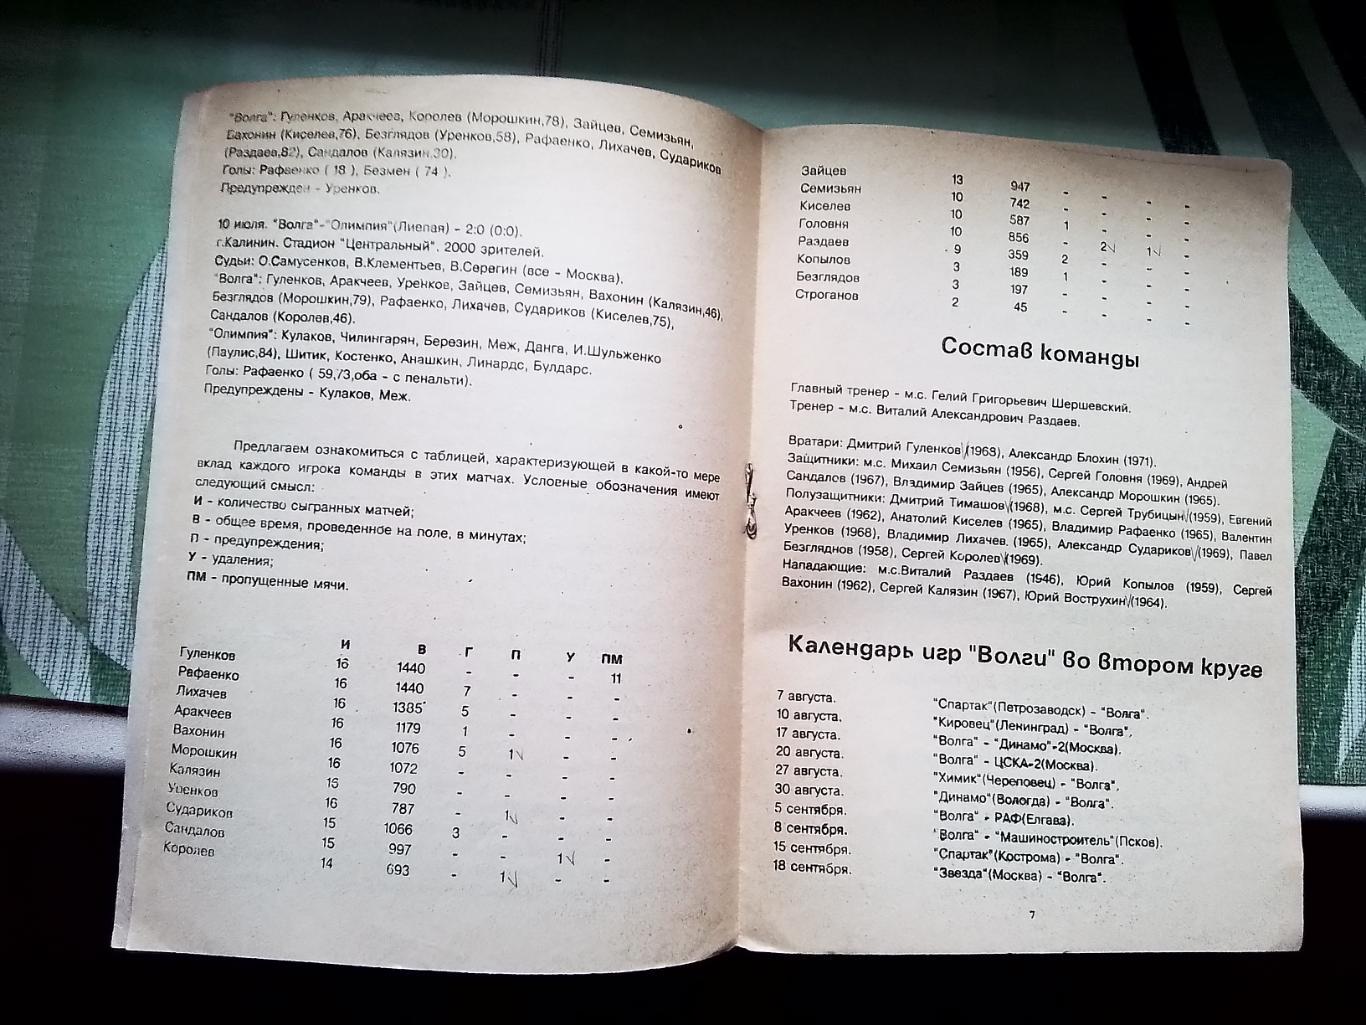 Программа сезона календарь Тверь 1990 2 круг КЛФ Альтернатива 1